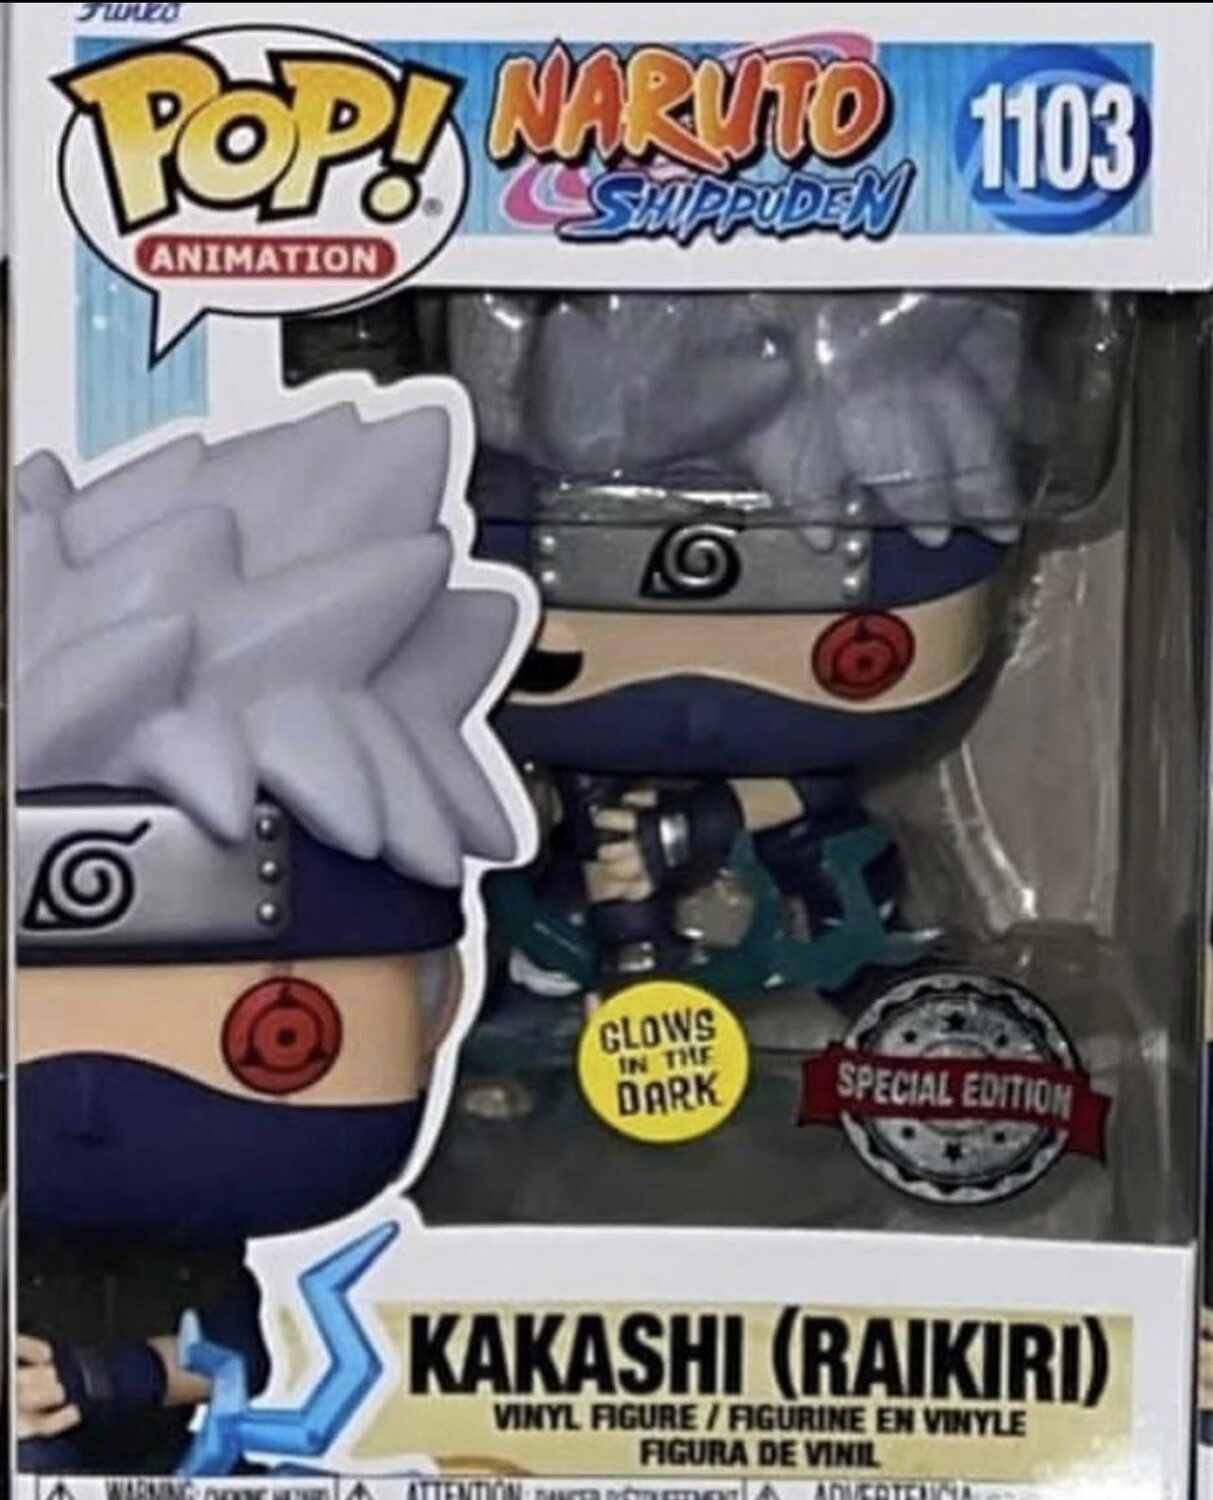 Funko Pop Animation Naruto Shippuden. Kakashi (Raikiri) exclusivo de GameStop 